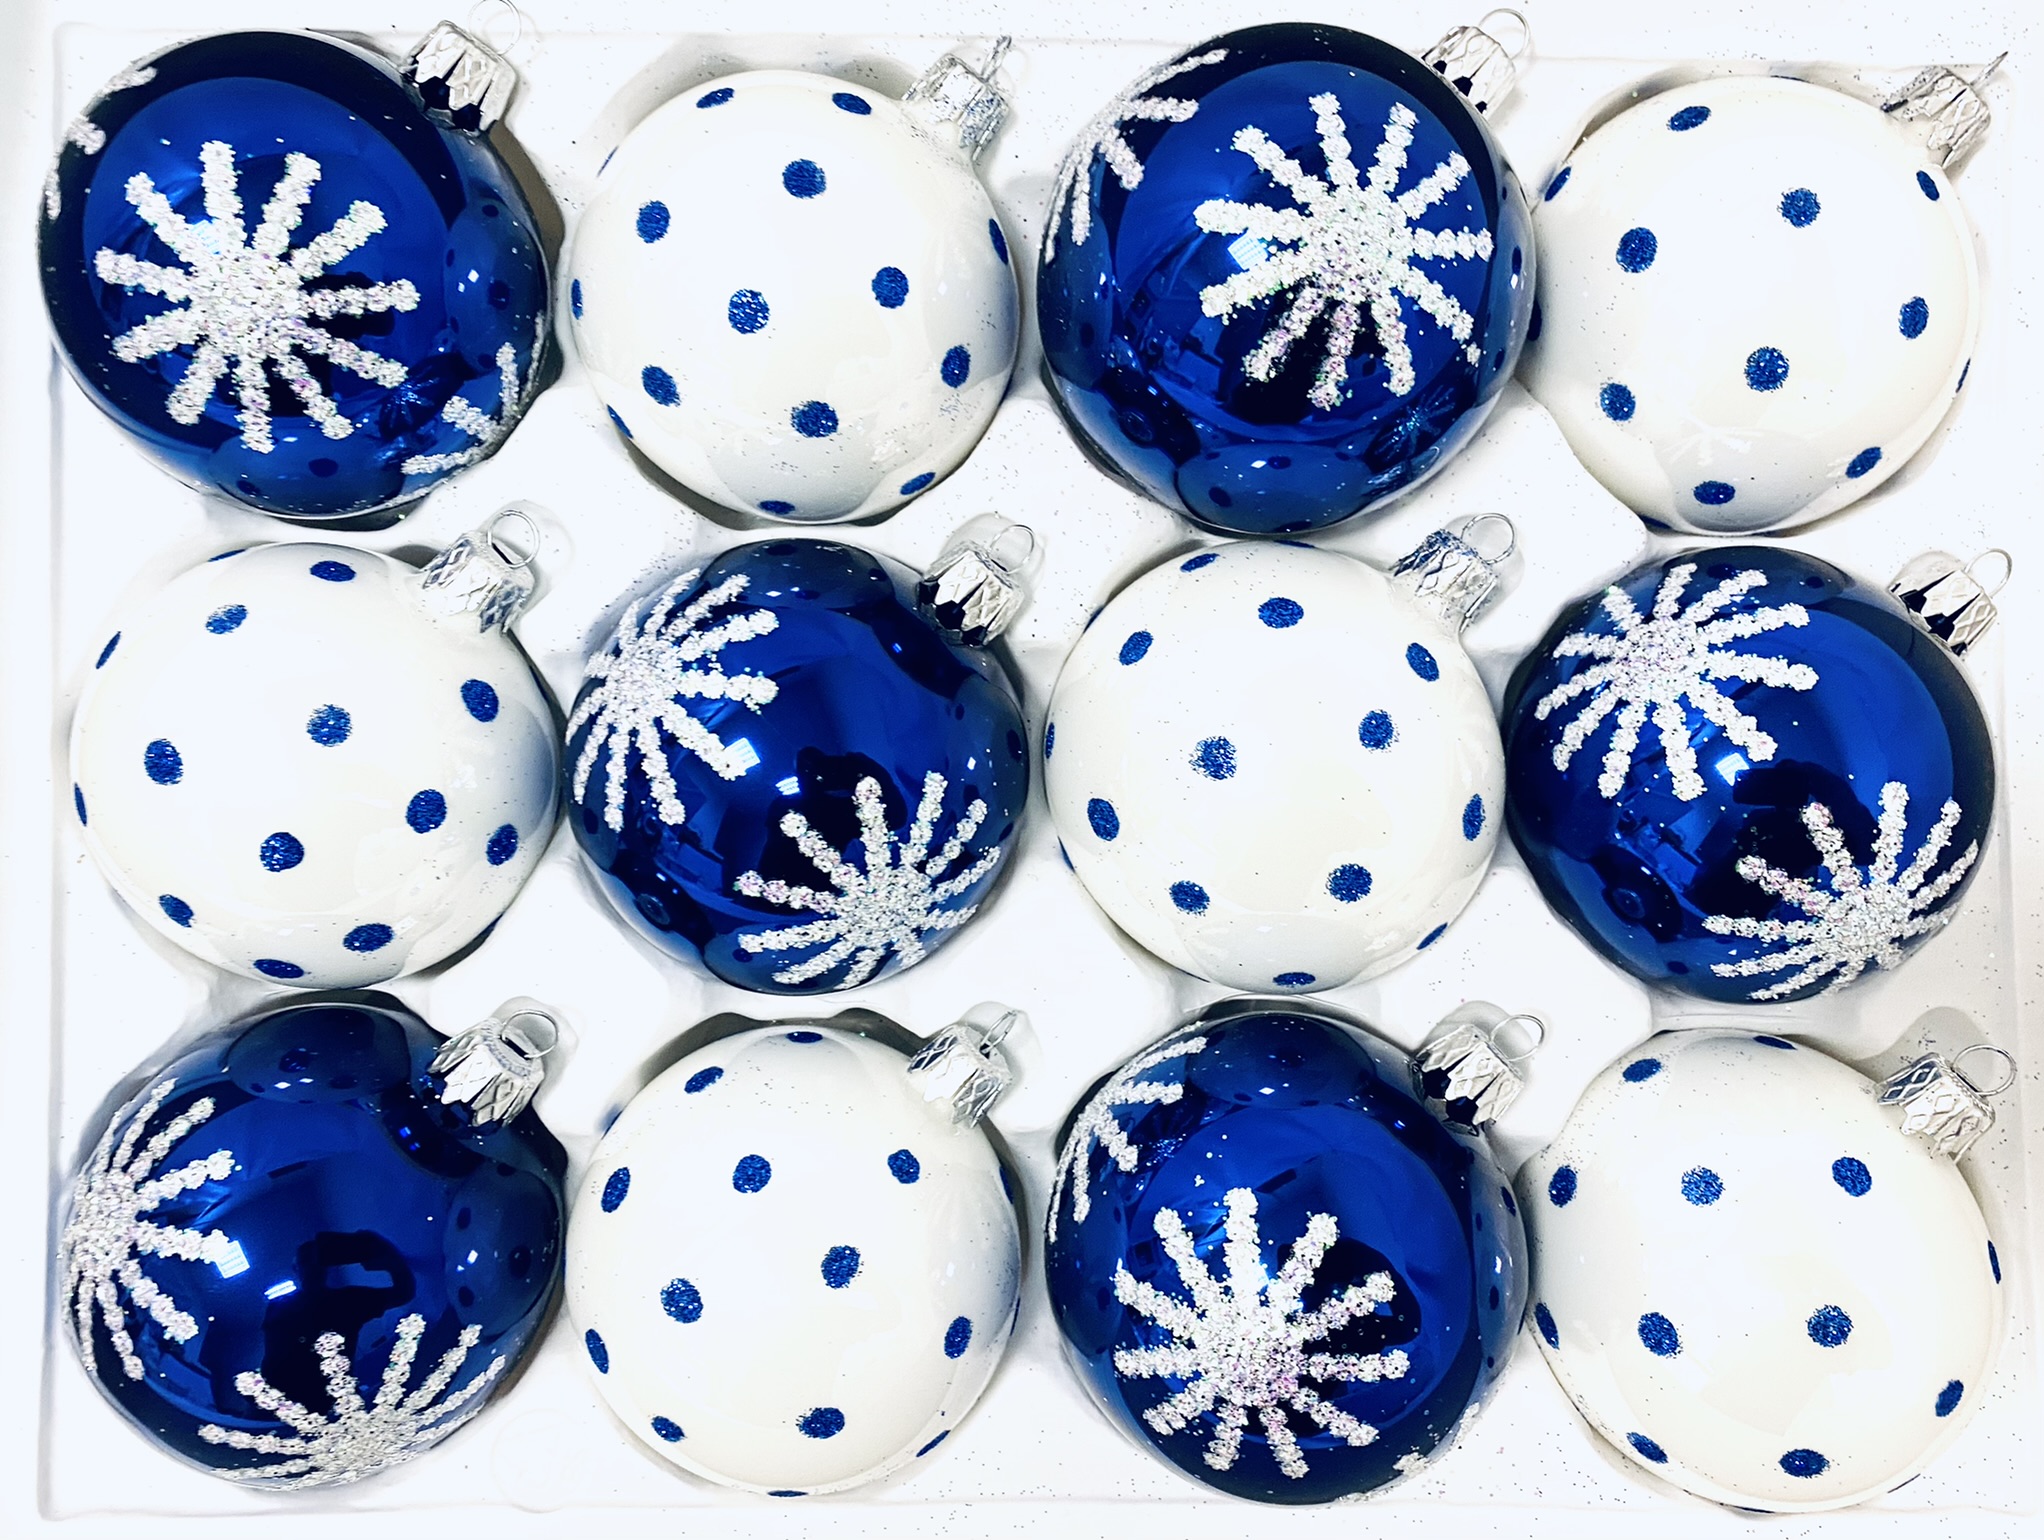 Irisa Vánoční ozdoby JUSTY kombinace bílé a modré koule s dekorem vločka 7 cm, SET 12 ks Balení: 12ks, Barva: modrá;bílá, Velikost: 7 cm